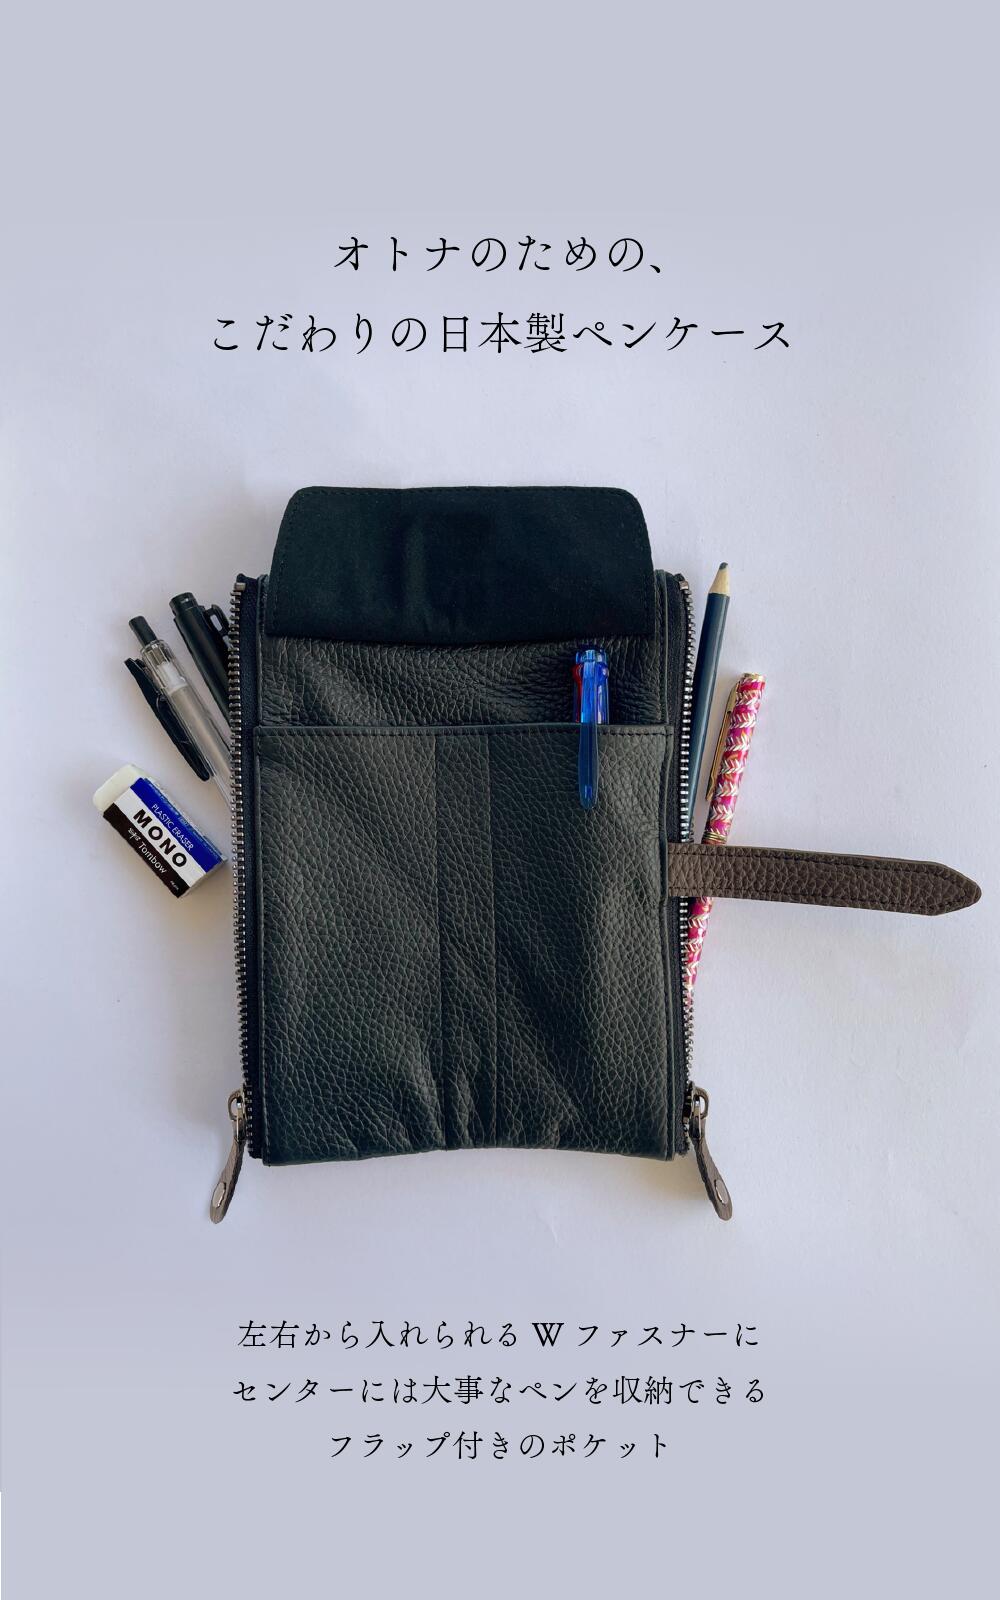 日本製 本革 ペンケースレザー ふでばこ ペン入れ 筆ばこ ペンホルダー 